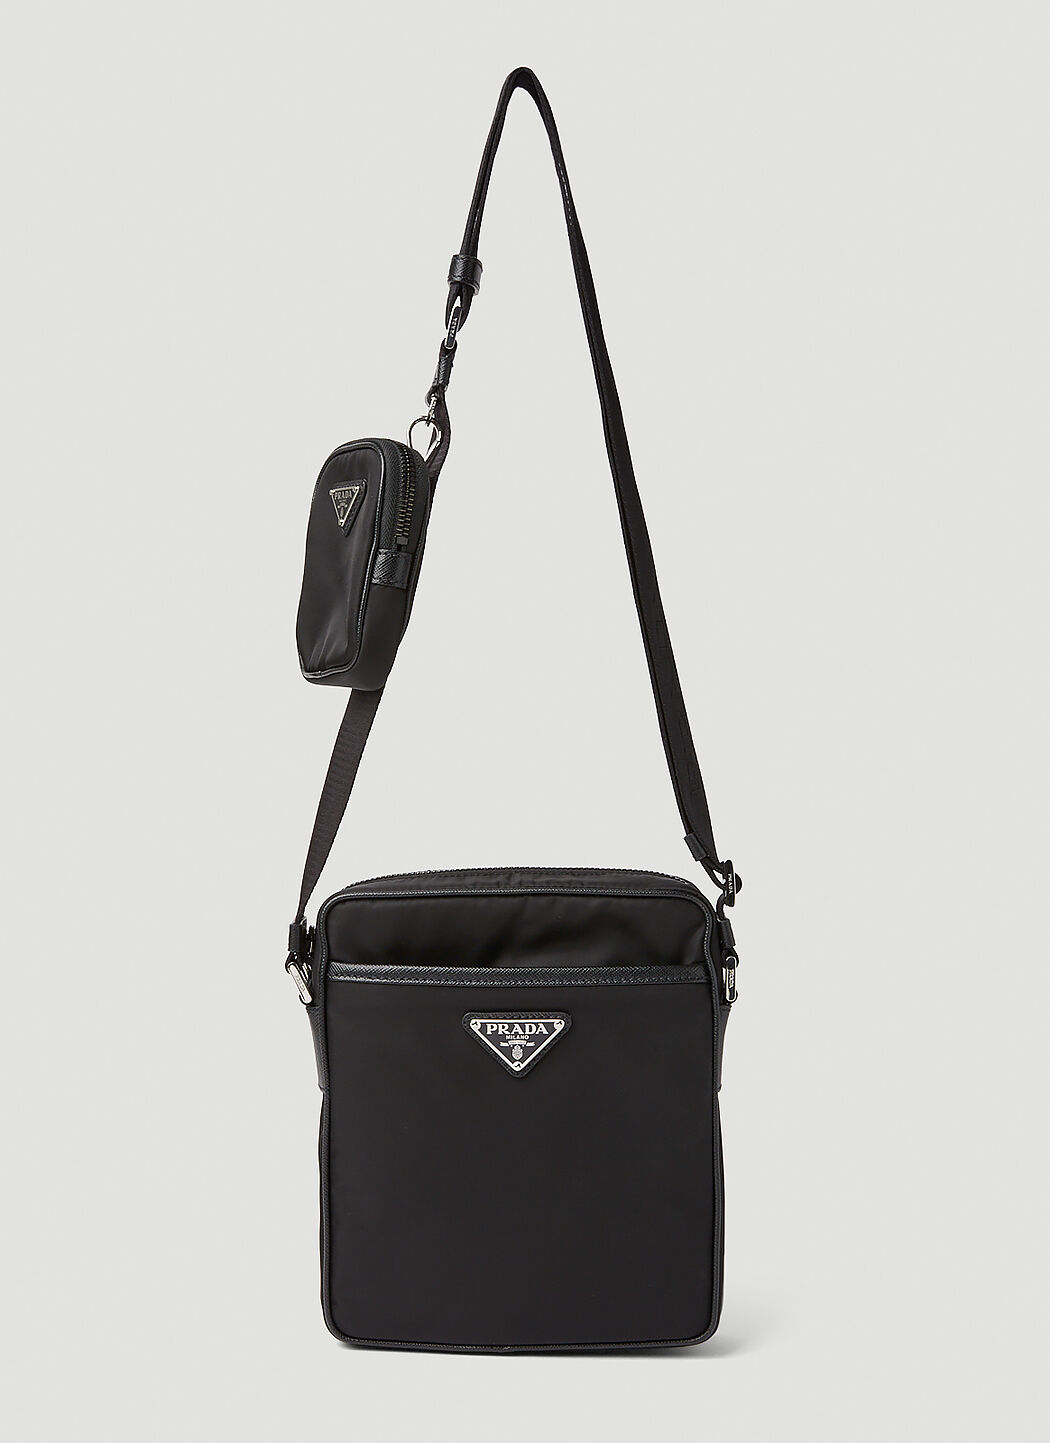 Prada Re-Nylon Crossbody Bag in Black | LN-CC®